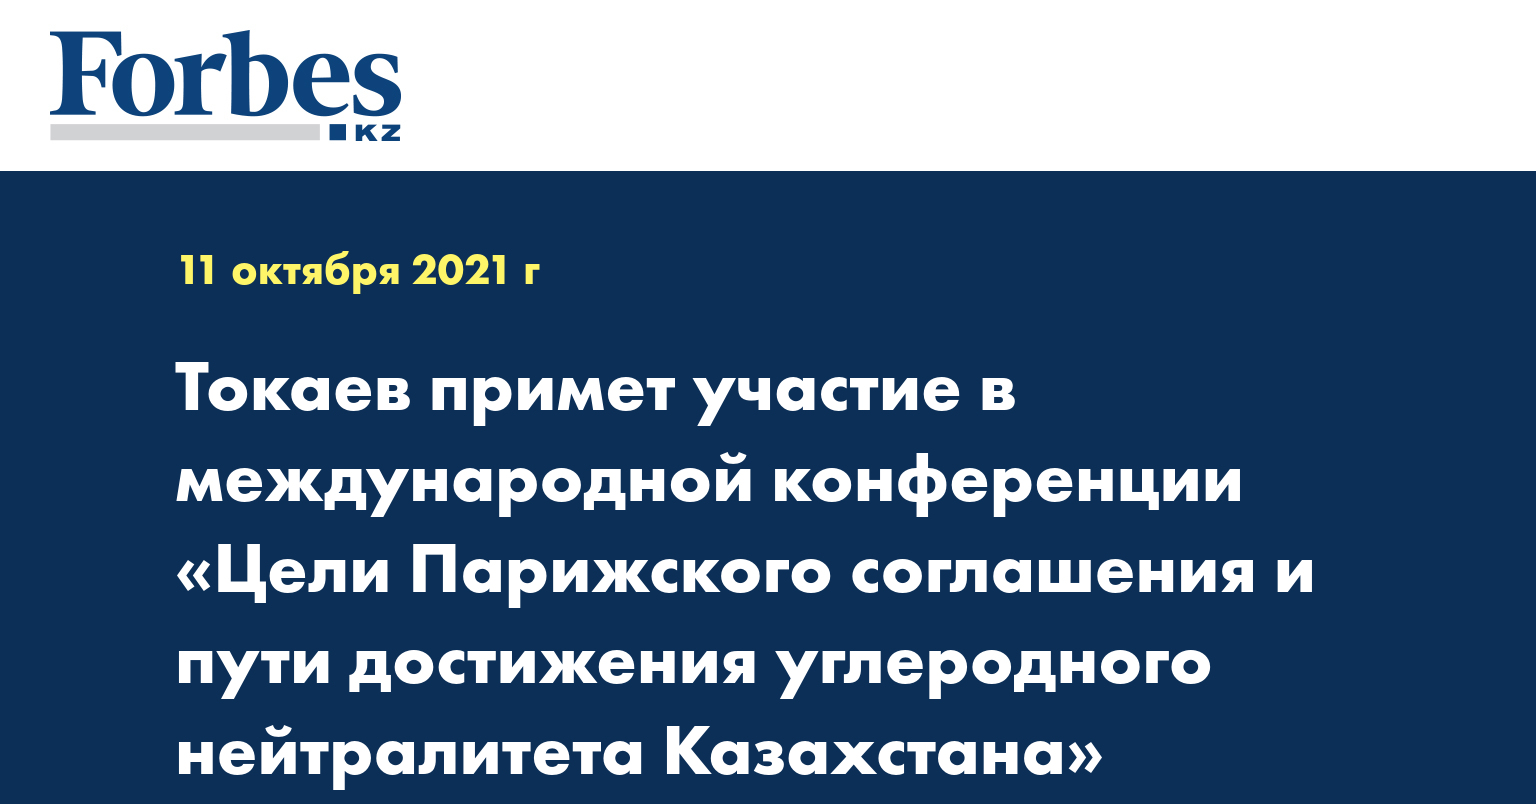 Токаев примет участие в международной конференции «Цели Парижского соглашения и пути достижения углеродного нейтралитета Казахстана»